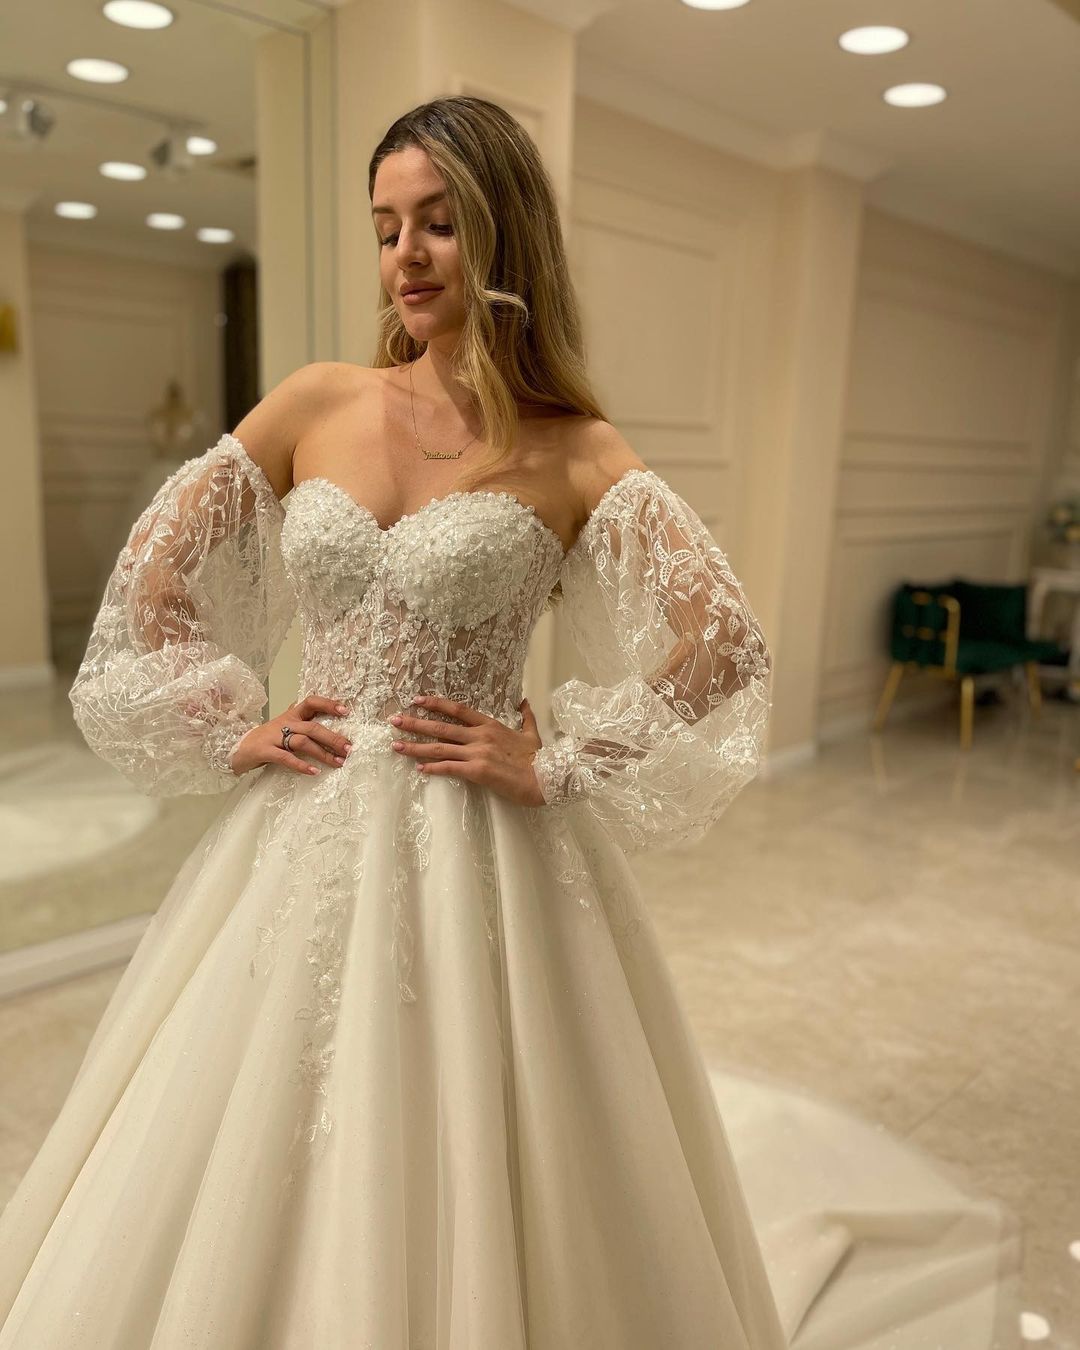 Kaufen Sie Schöne Hochzeitskleider A Linie online bei babyonlinedress.de. Brautkleider mit Spitze aus tüll zur Hochzeit gehen.